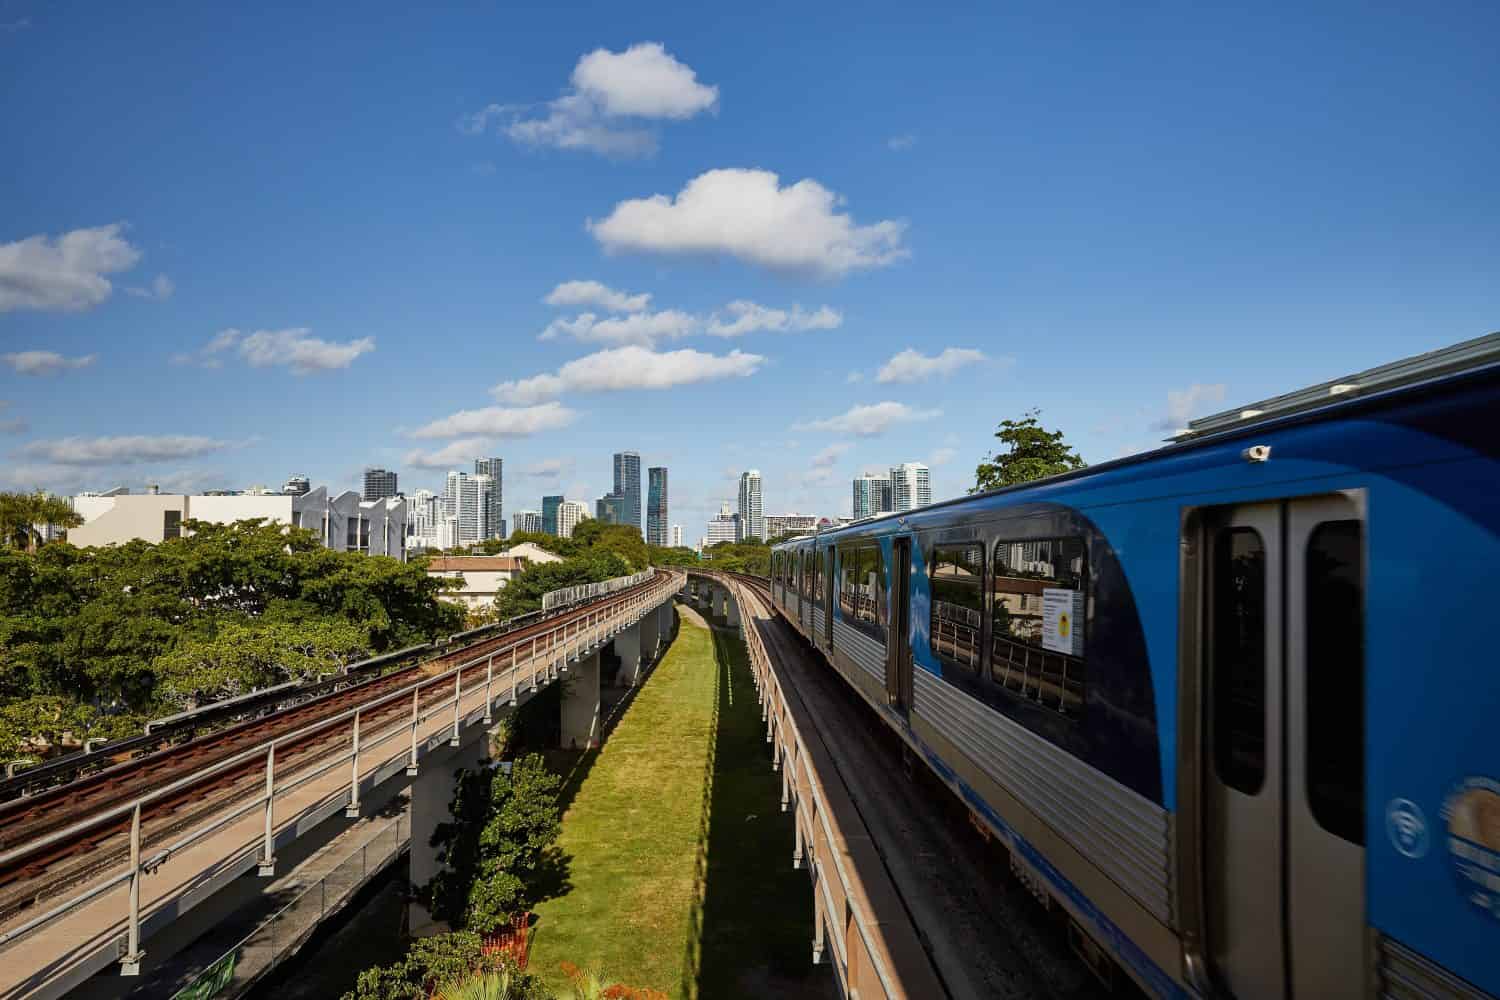 Il treno di Miami sta partendo dalla stazione ferroviaria verso il centro di Miami, inquadratura grandangolare